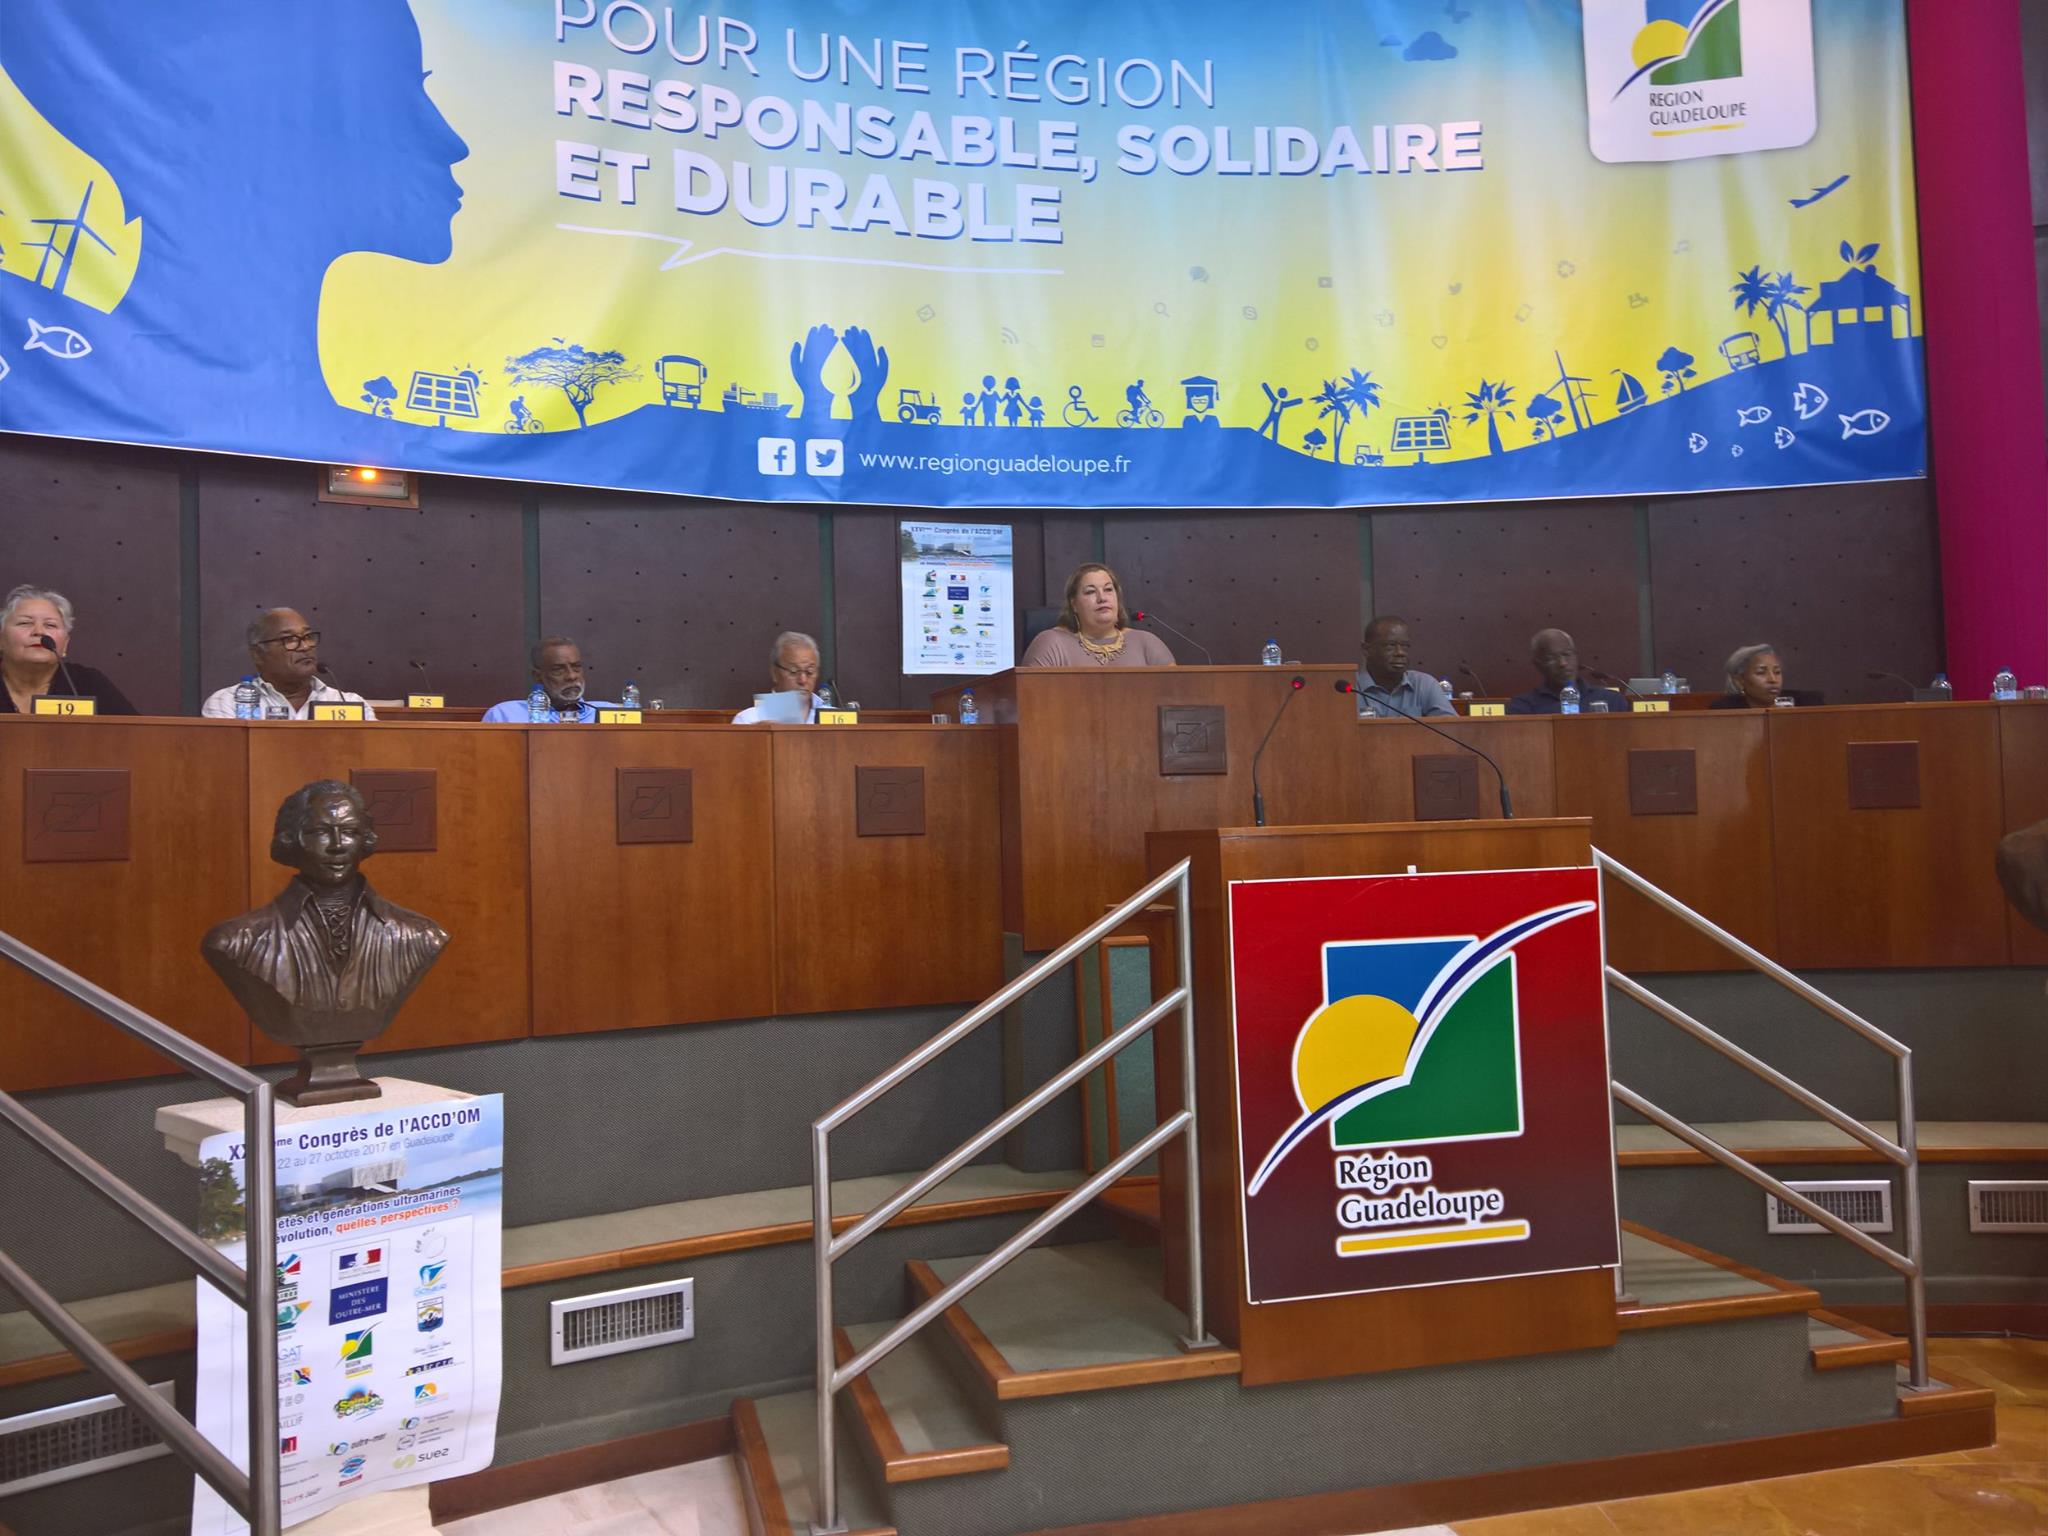 Collectivités locales en Outre-mer: L&rsquo;ACCD&rsquo;OM tient son prochain congrès en Guyane